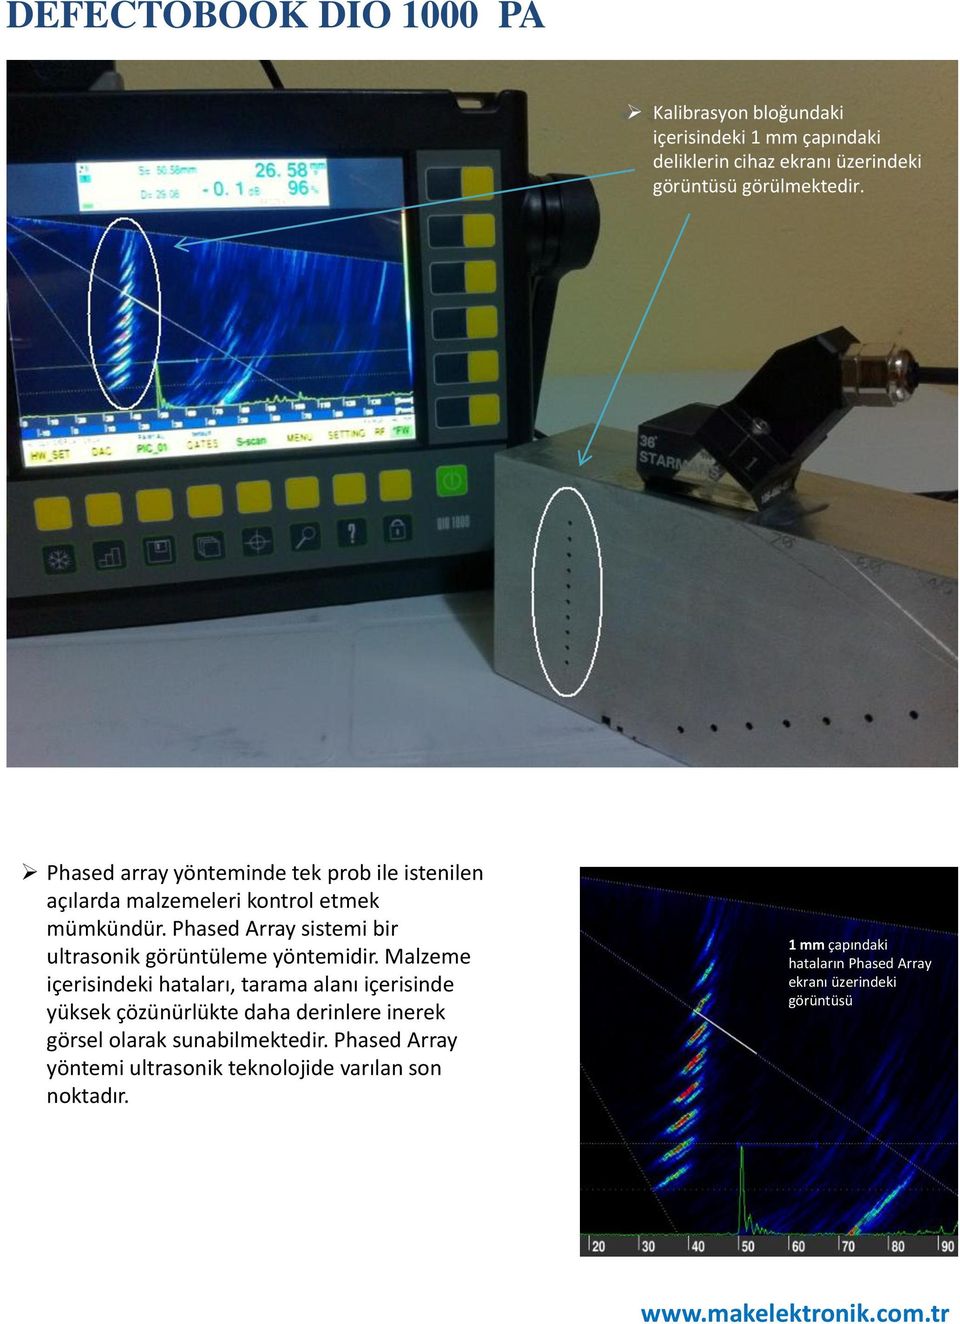 Phased Array sistemi bir ultrasonik görüntüleme yöntemidir.